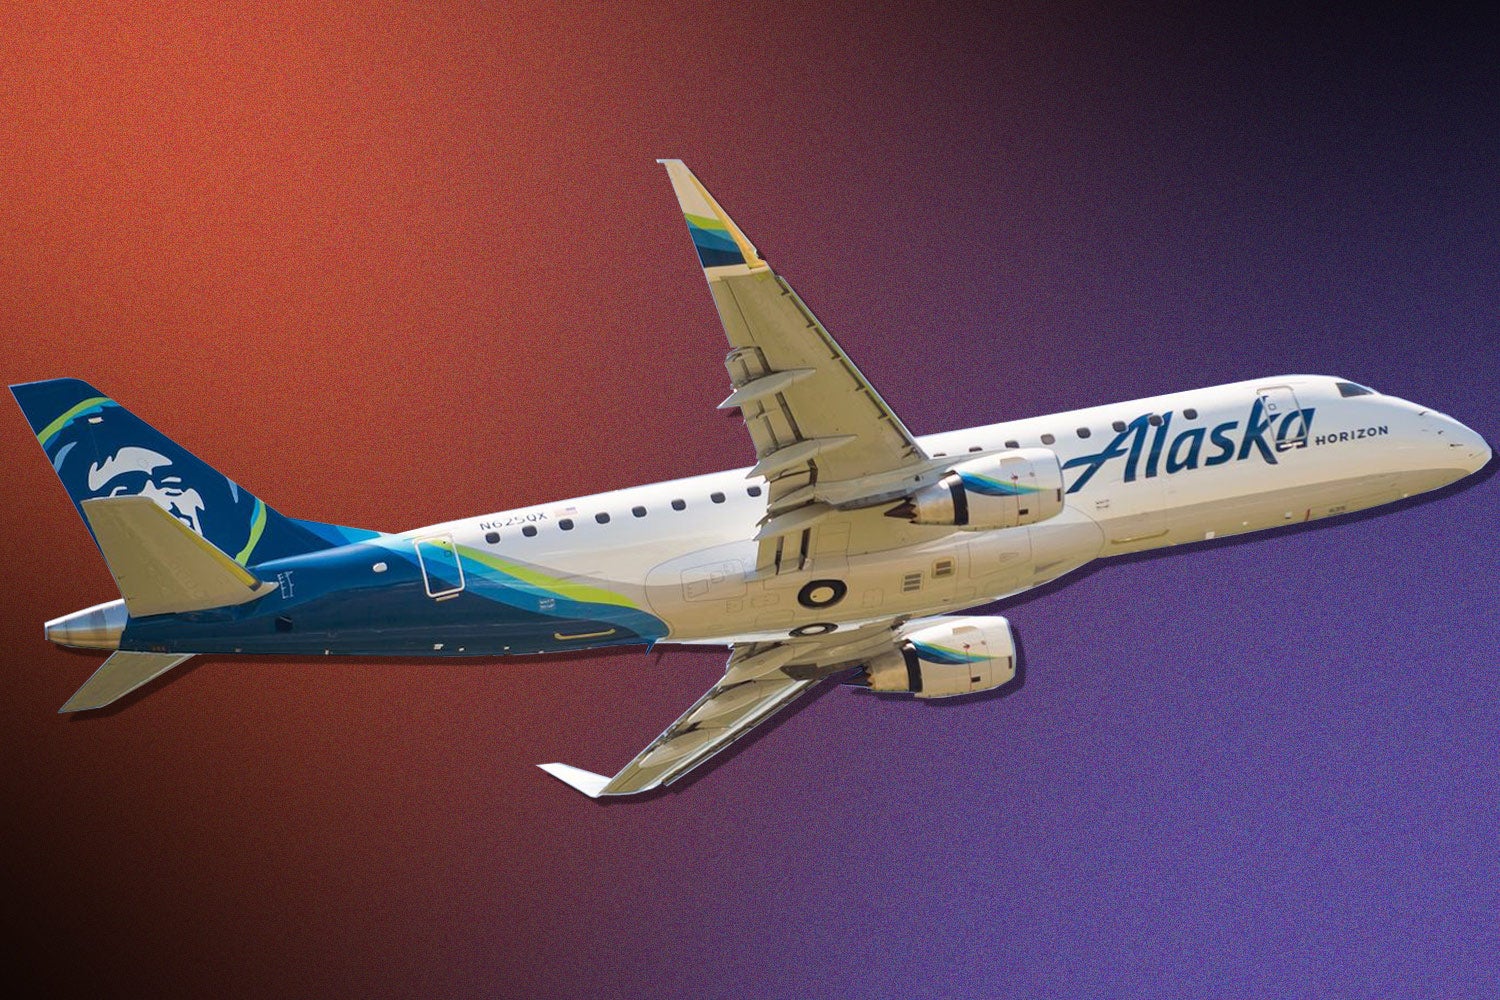 Nhân viên điều phối tại Alaska Airlines có một trợ lý AI mới. Ảnh: @Hãng hàng không Alaska.